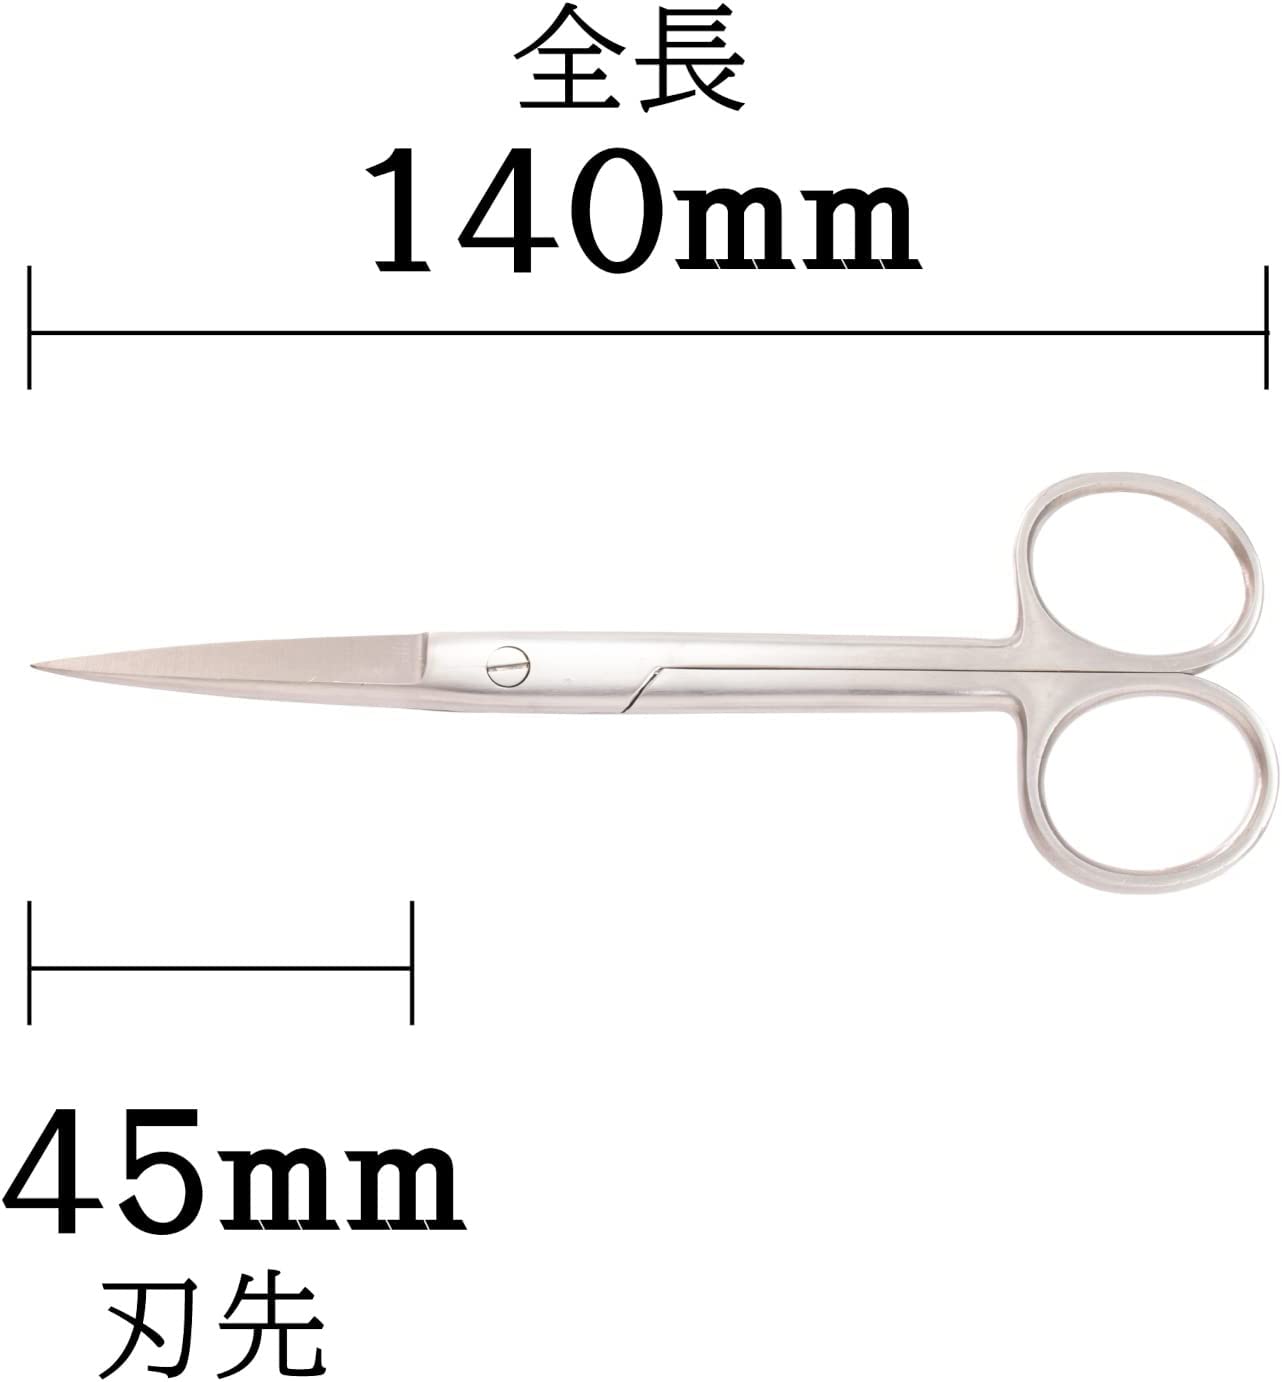 TM-32 Accurate Scissors 140mm [Straight]